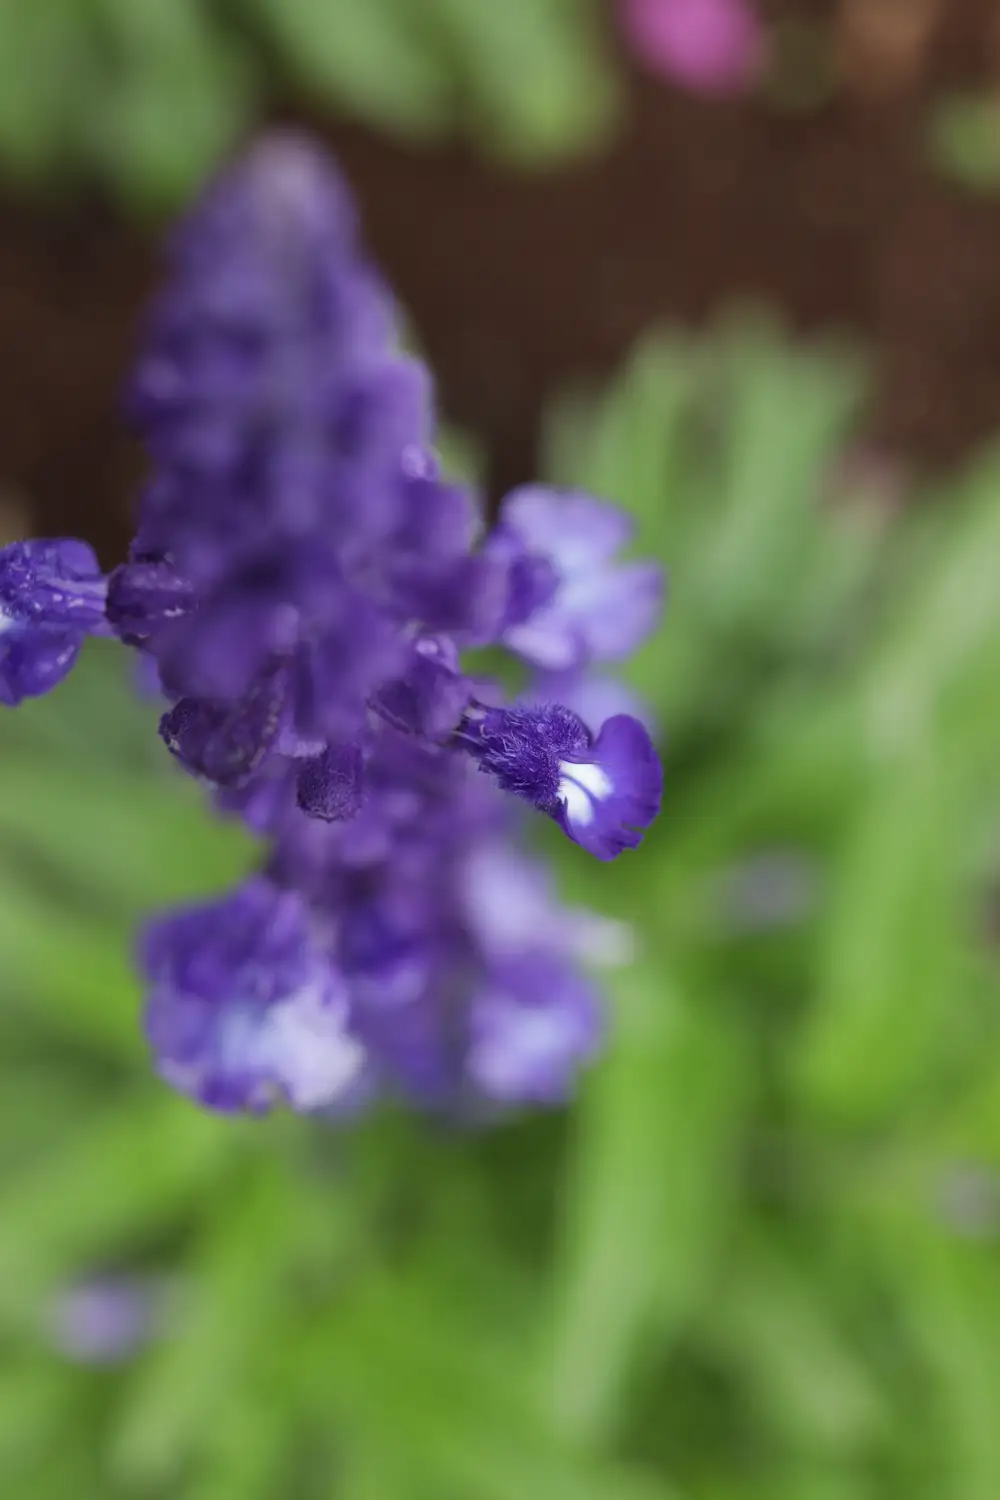 Wet purple flowers